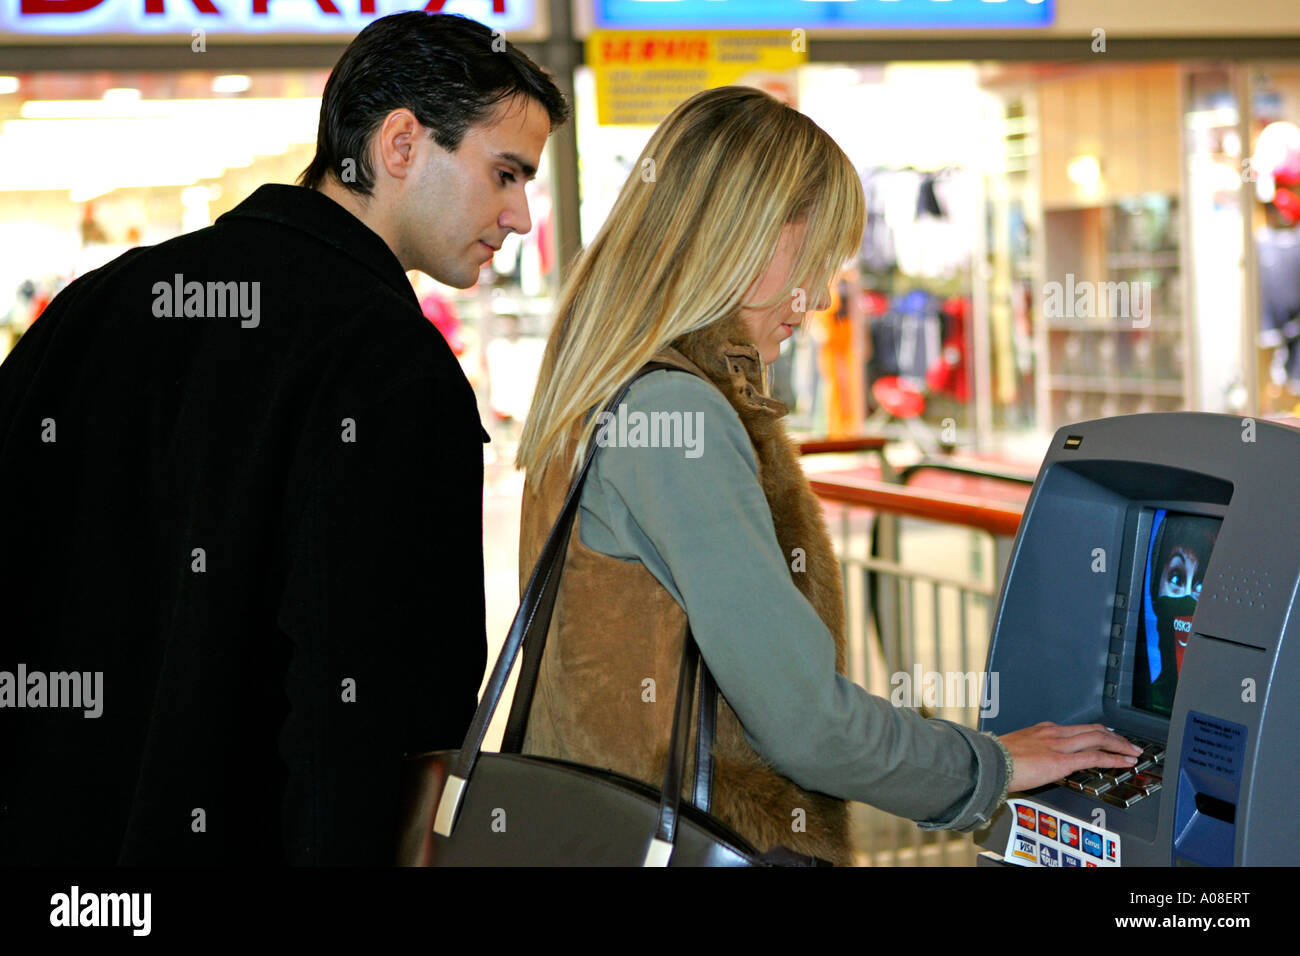 Frau am Geldautomaten Mann schaut nach PIN Nummer, woman at cash dispenser man looking for pin code Stock Photo